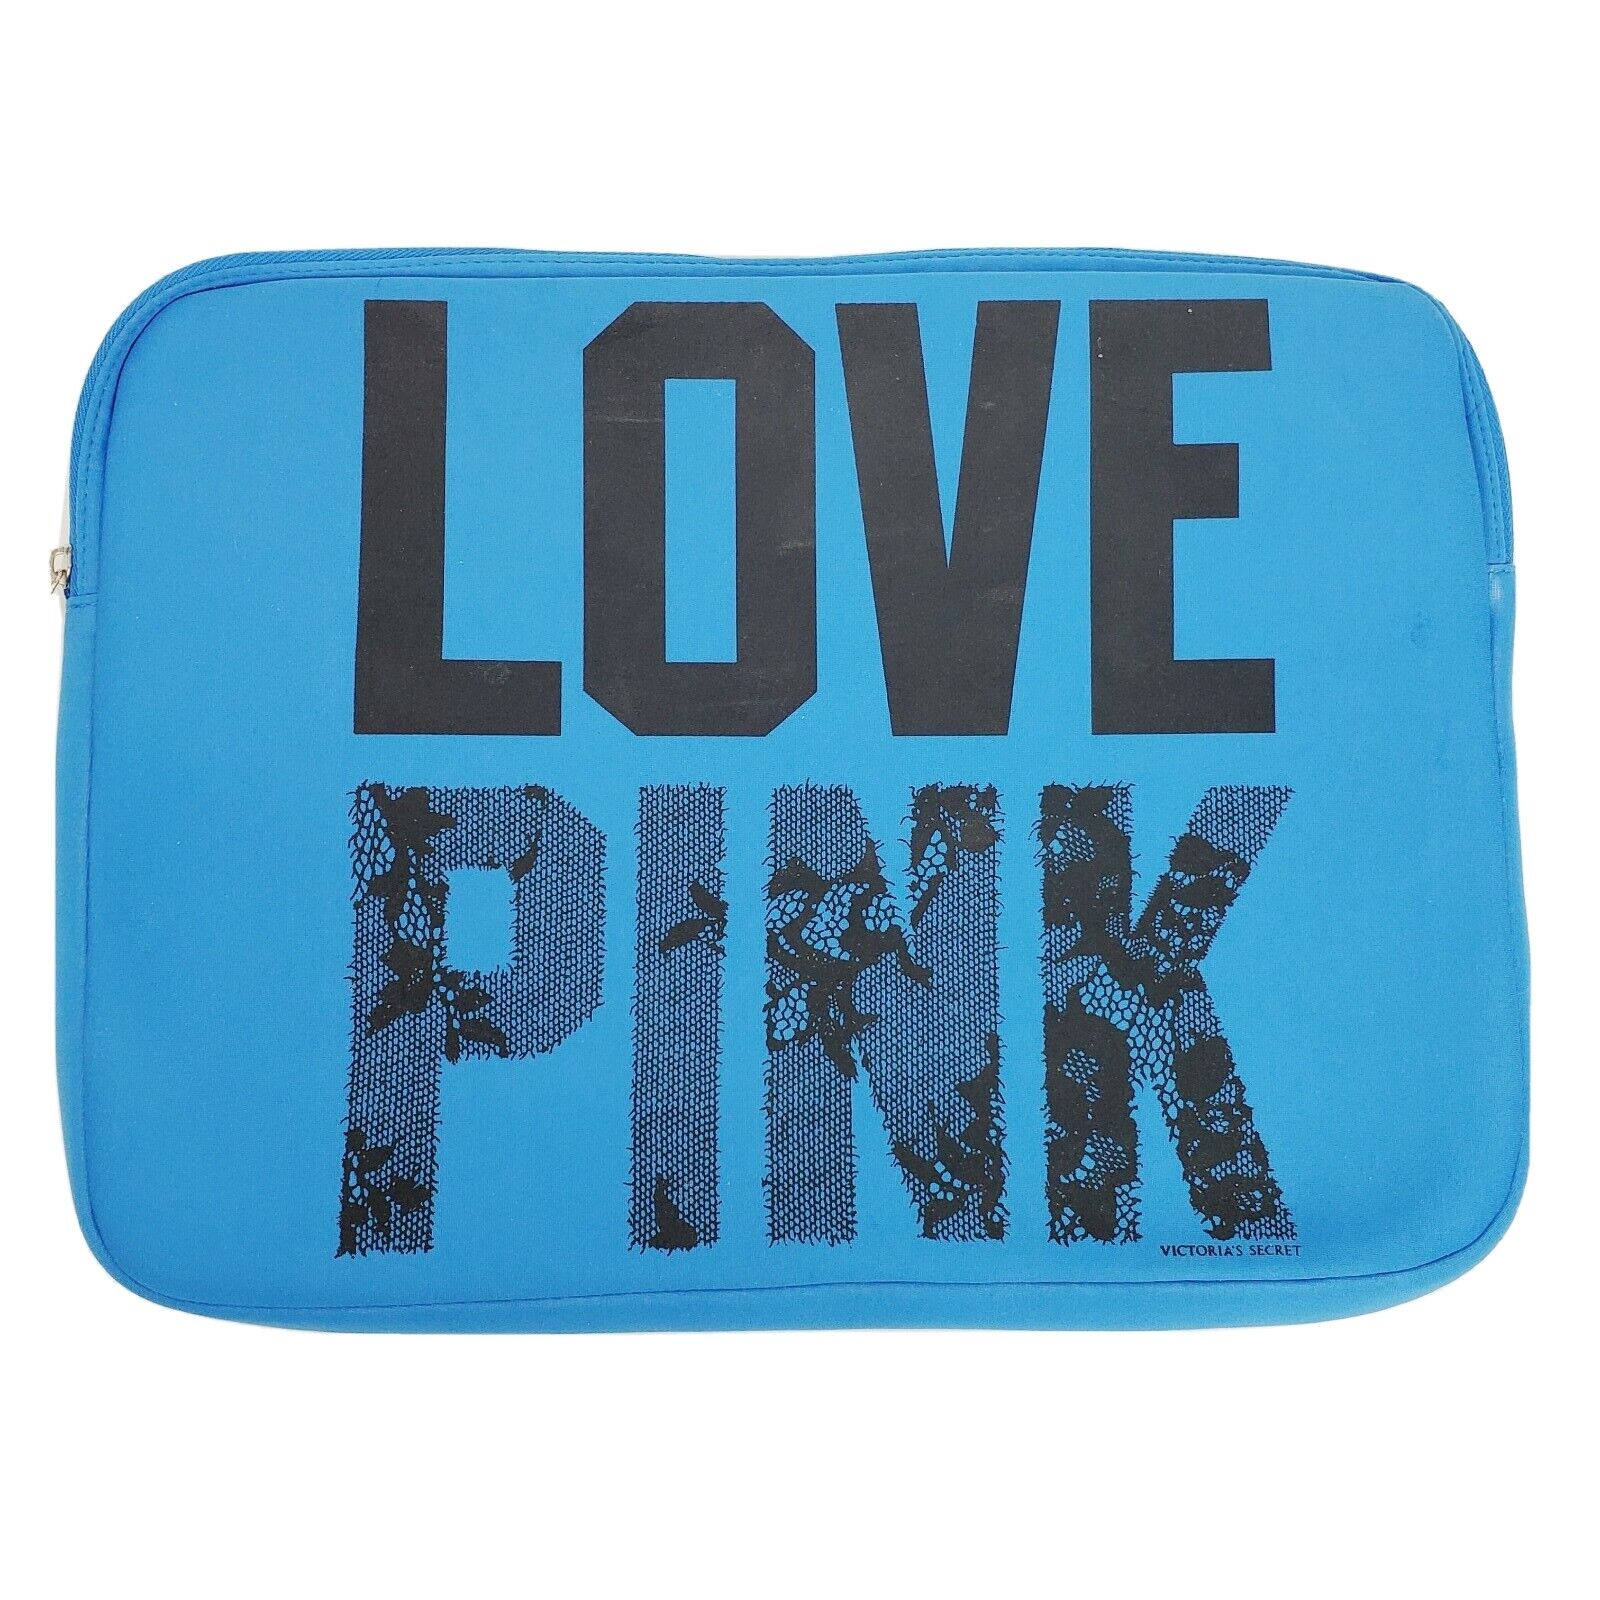 Victorias Secret LOVE PINK Laptop Sleeve/Case Blue w/ Black Letters SUPER CUTE